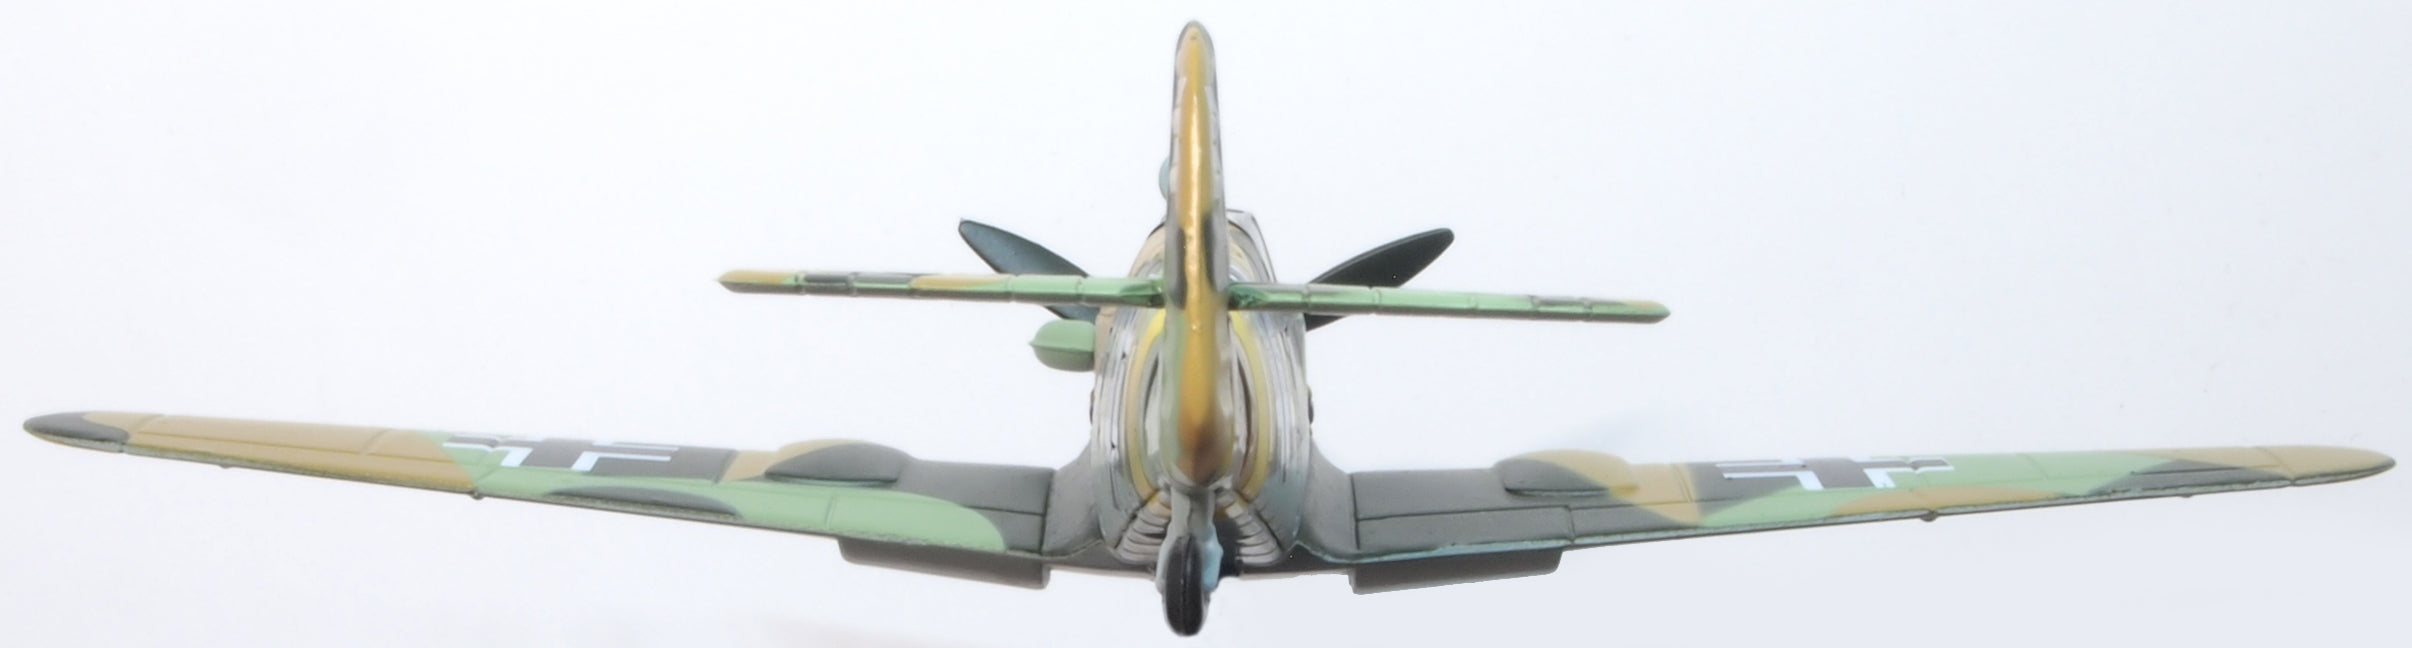 Messerschmitt-Bf-109F4/Trop-104-Eberhard-von-Boremsk No Swastika - 172 Scale AC114S rear